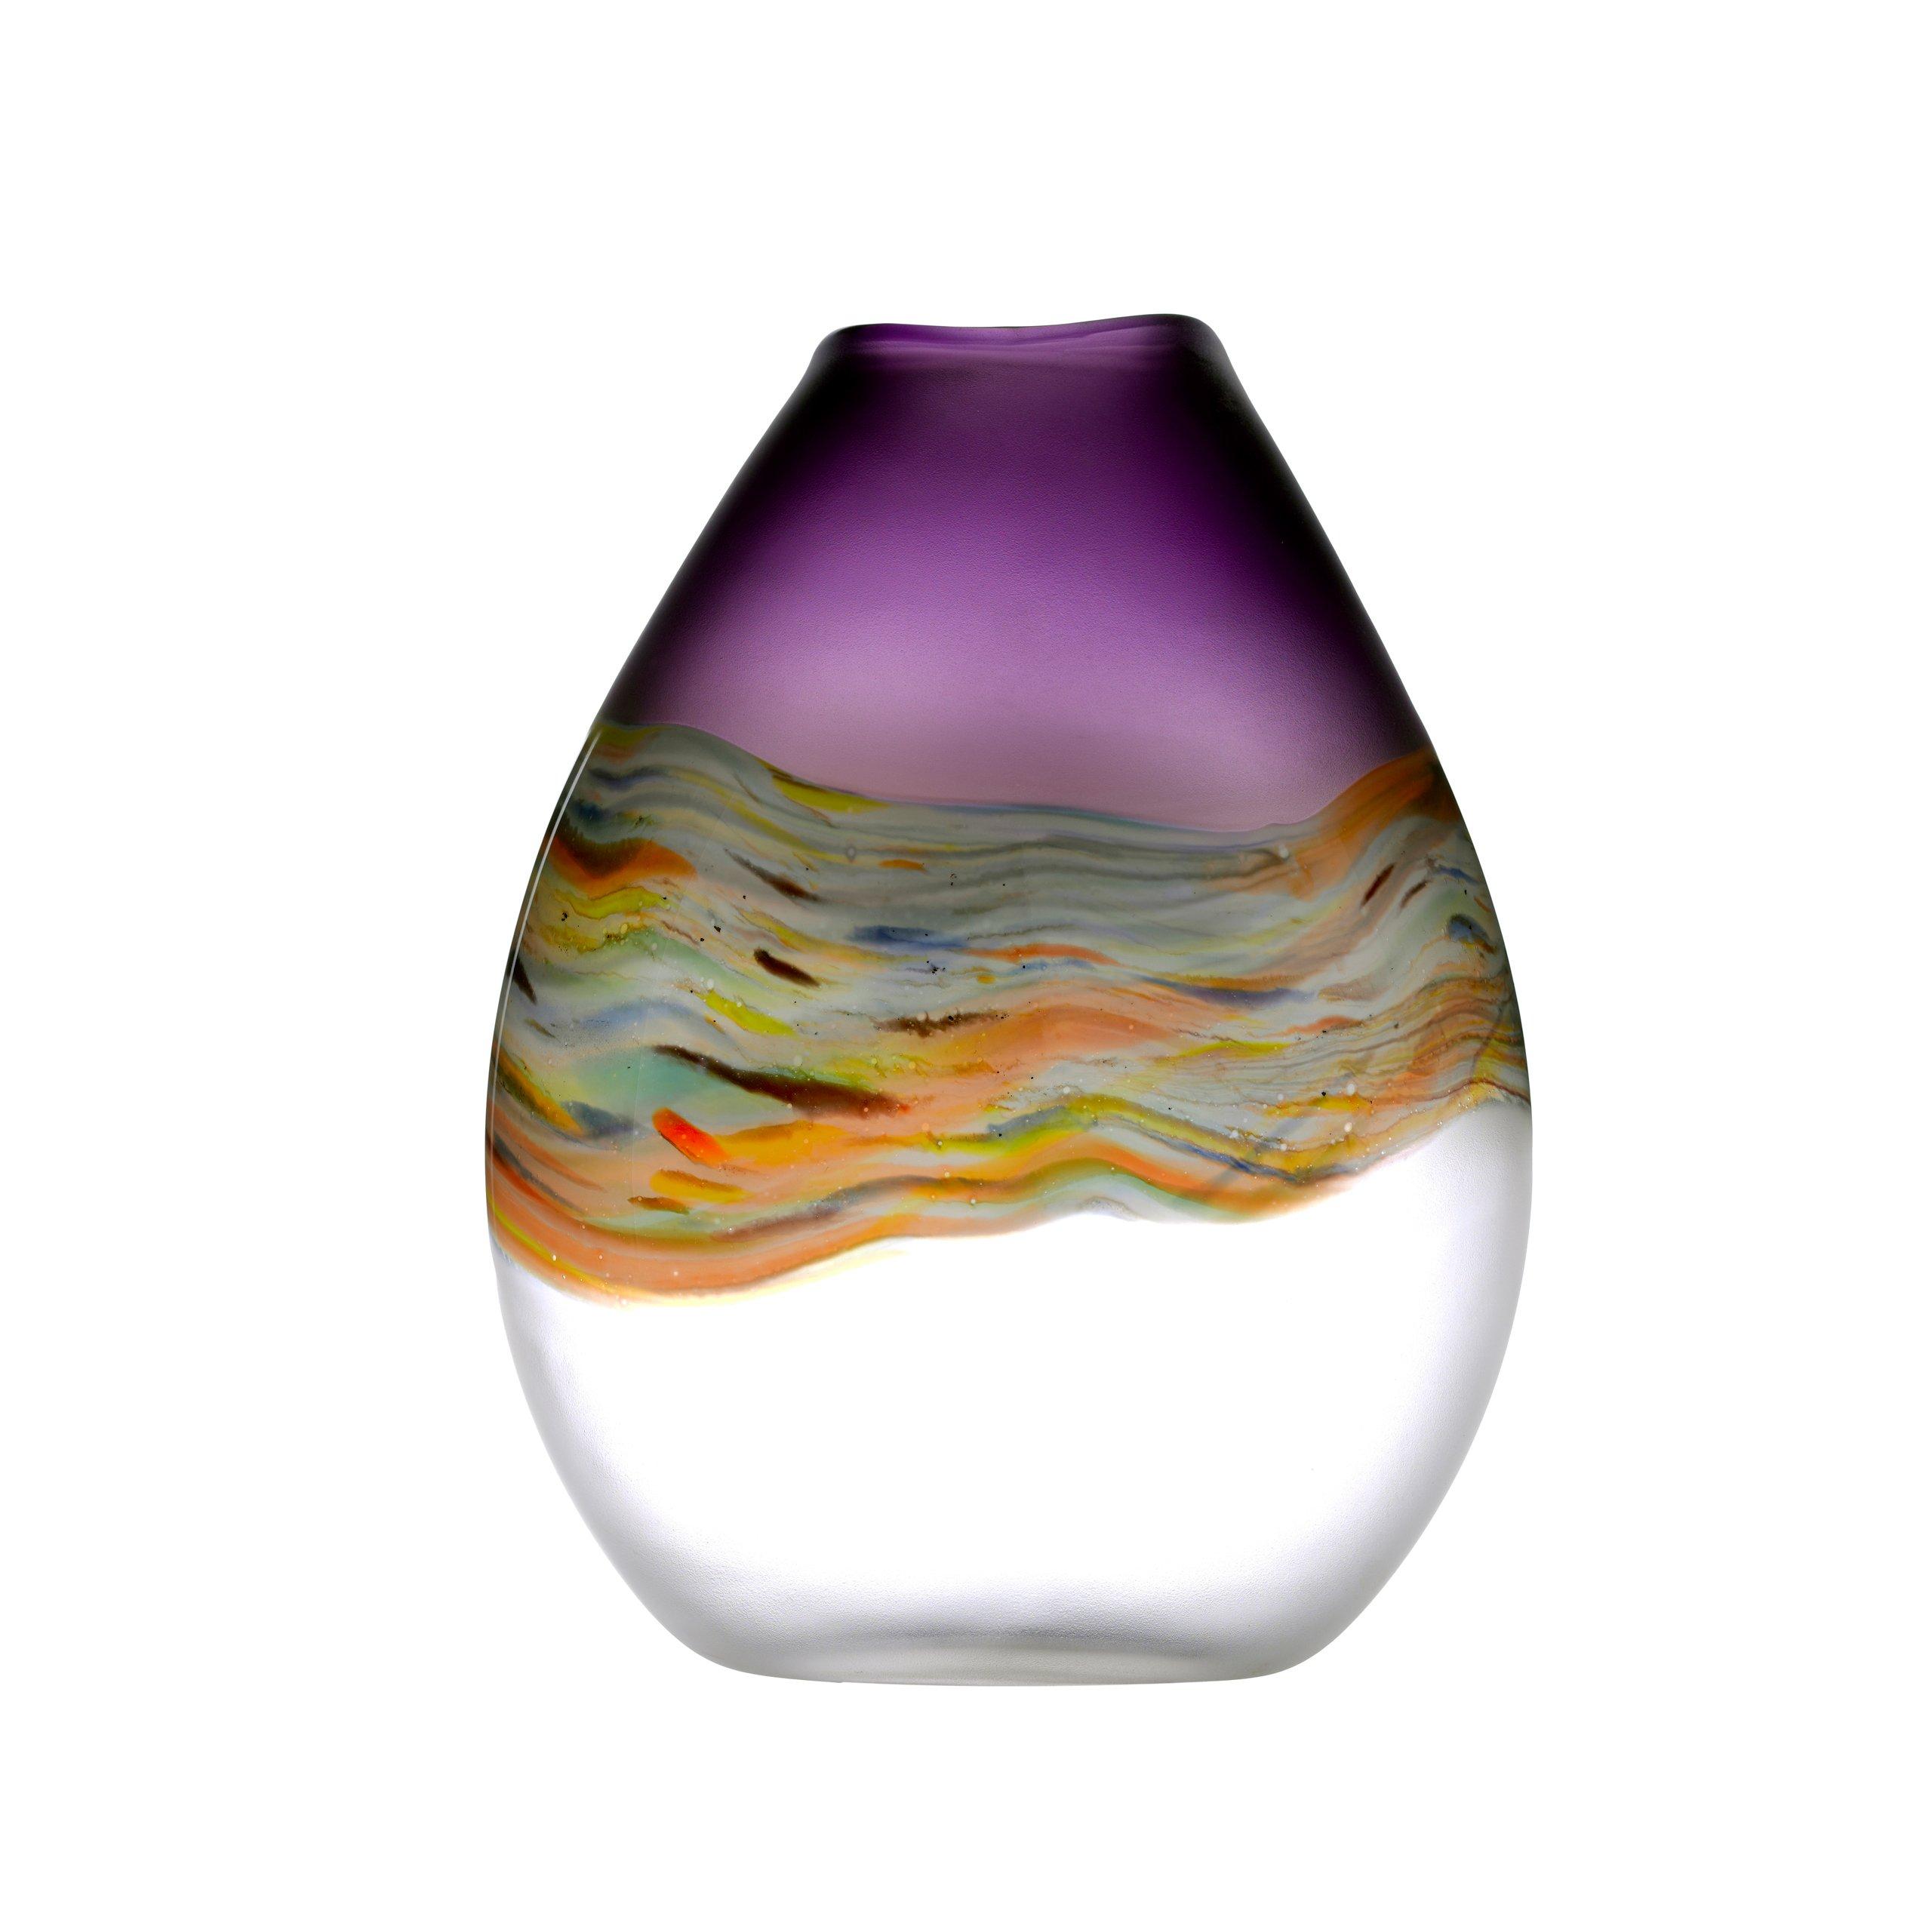 Lucius Hand-Blown Glass Vase